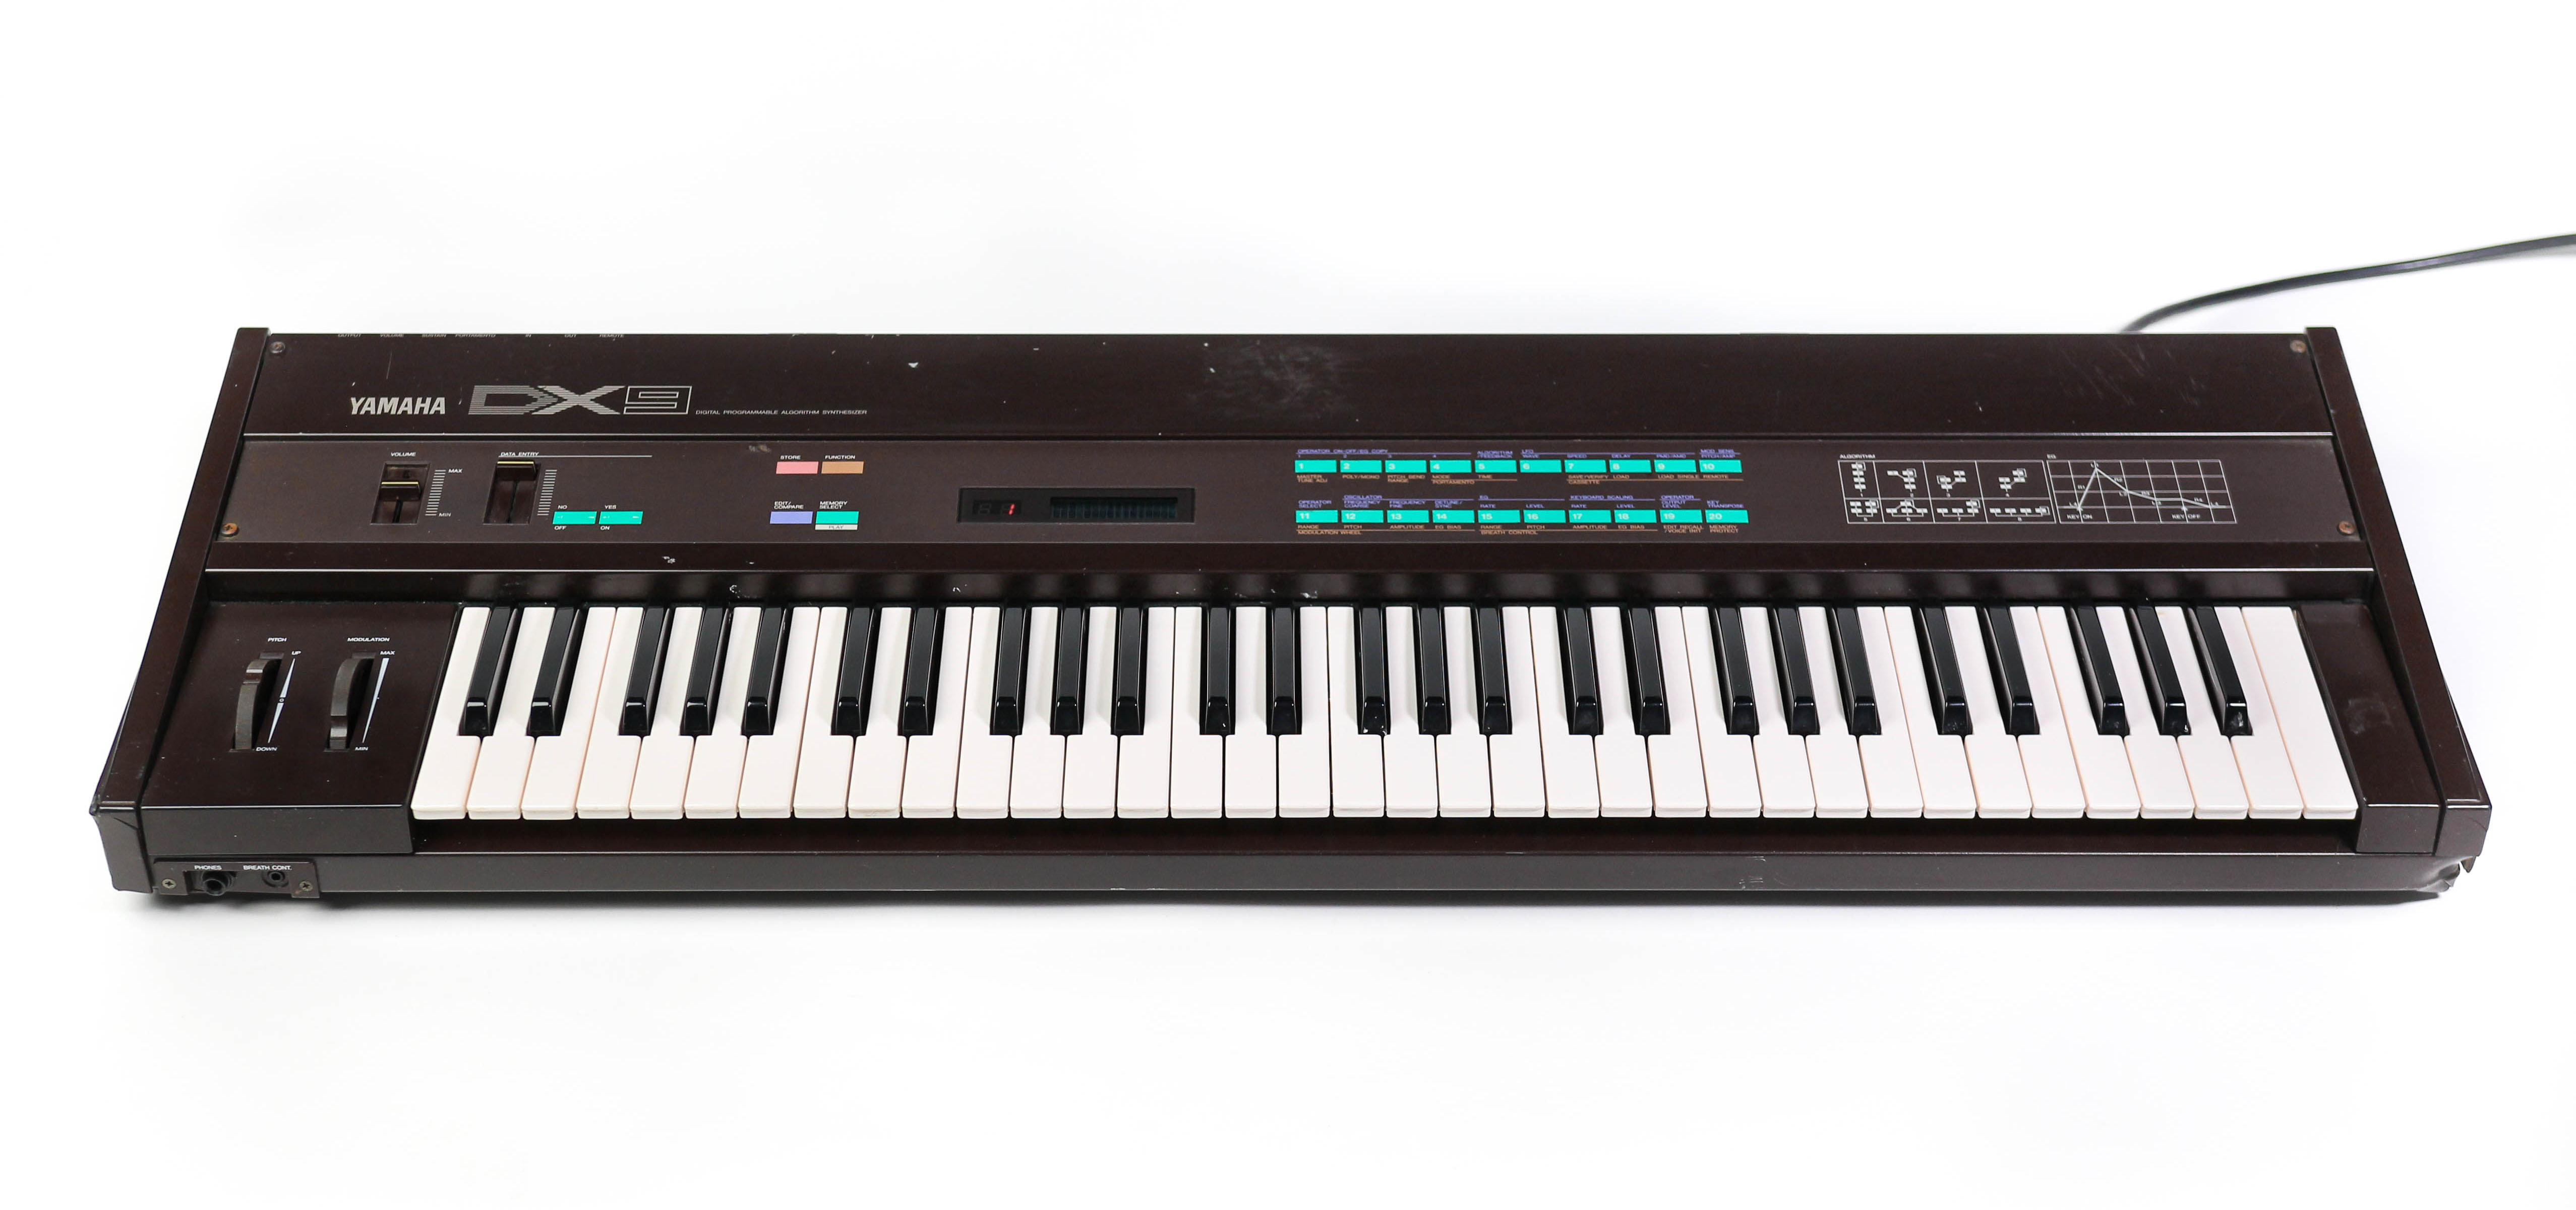 Yamaha DX9 synthesizer